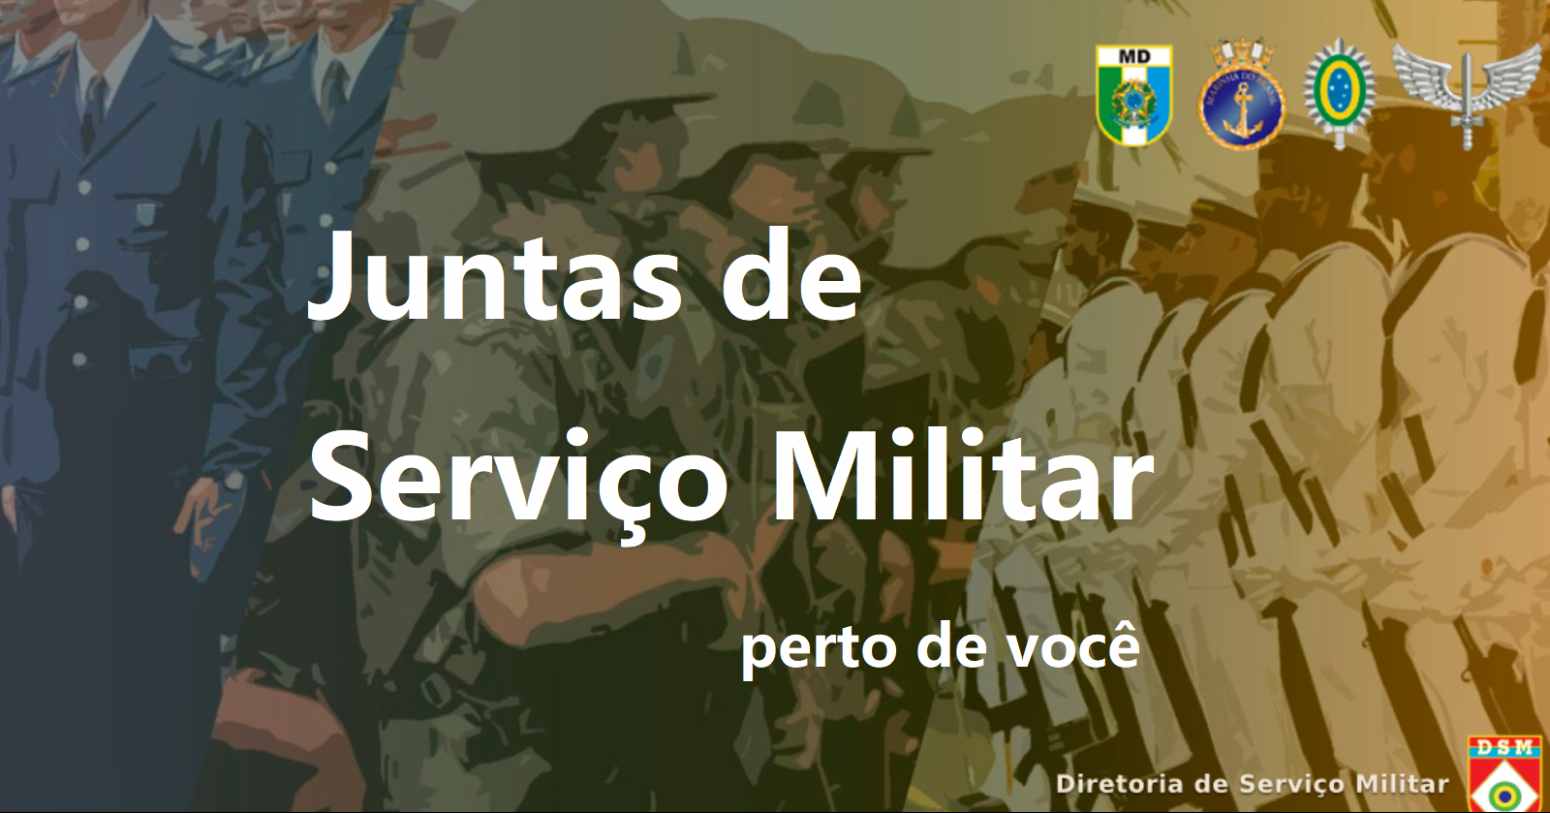 JSM AC – lista completa das Juntas de Serviço Militar em Acre